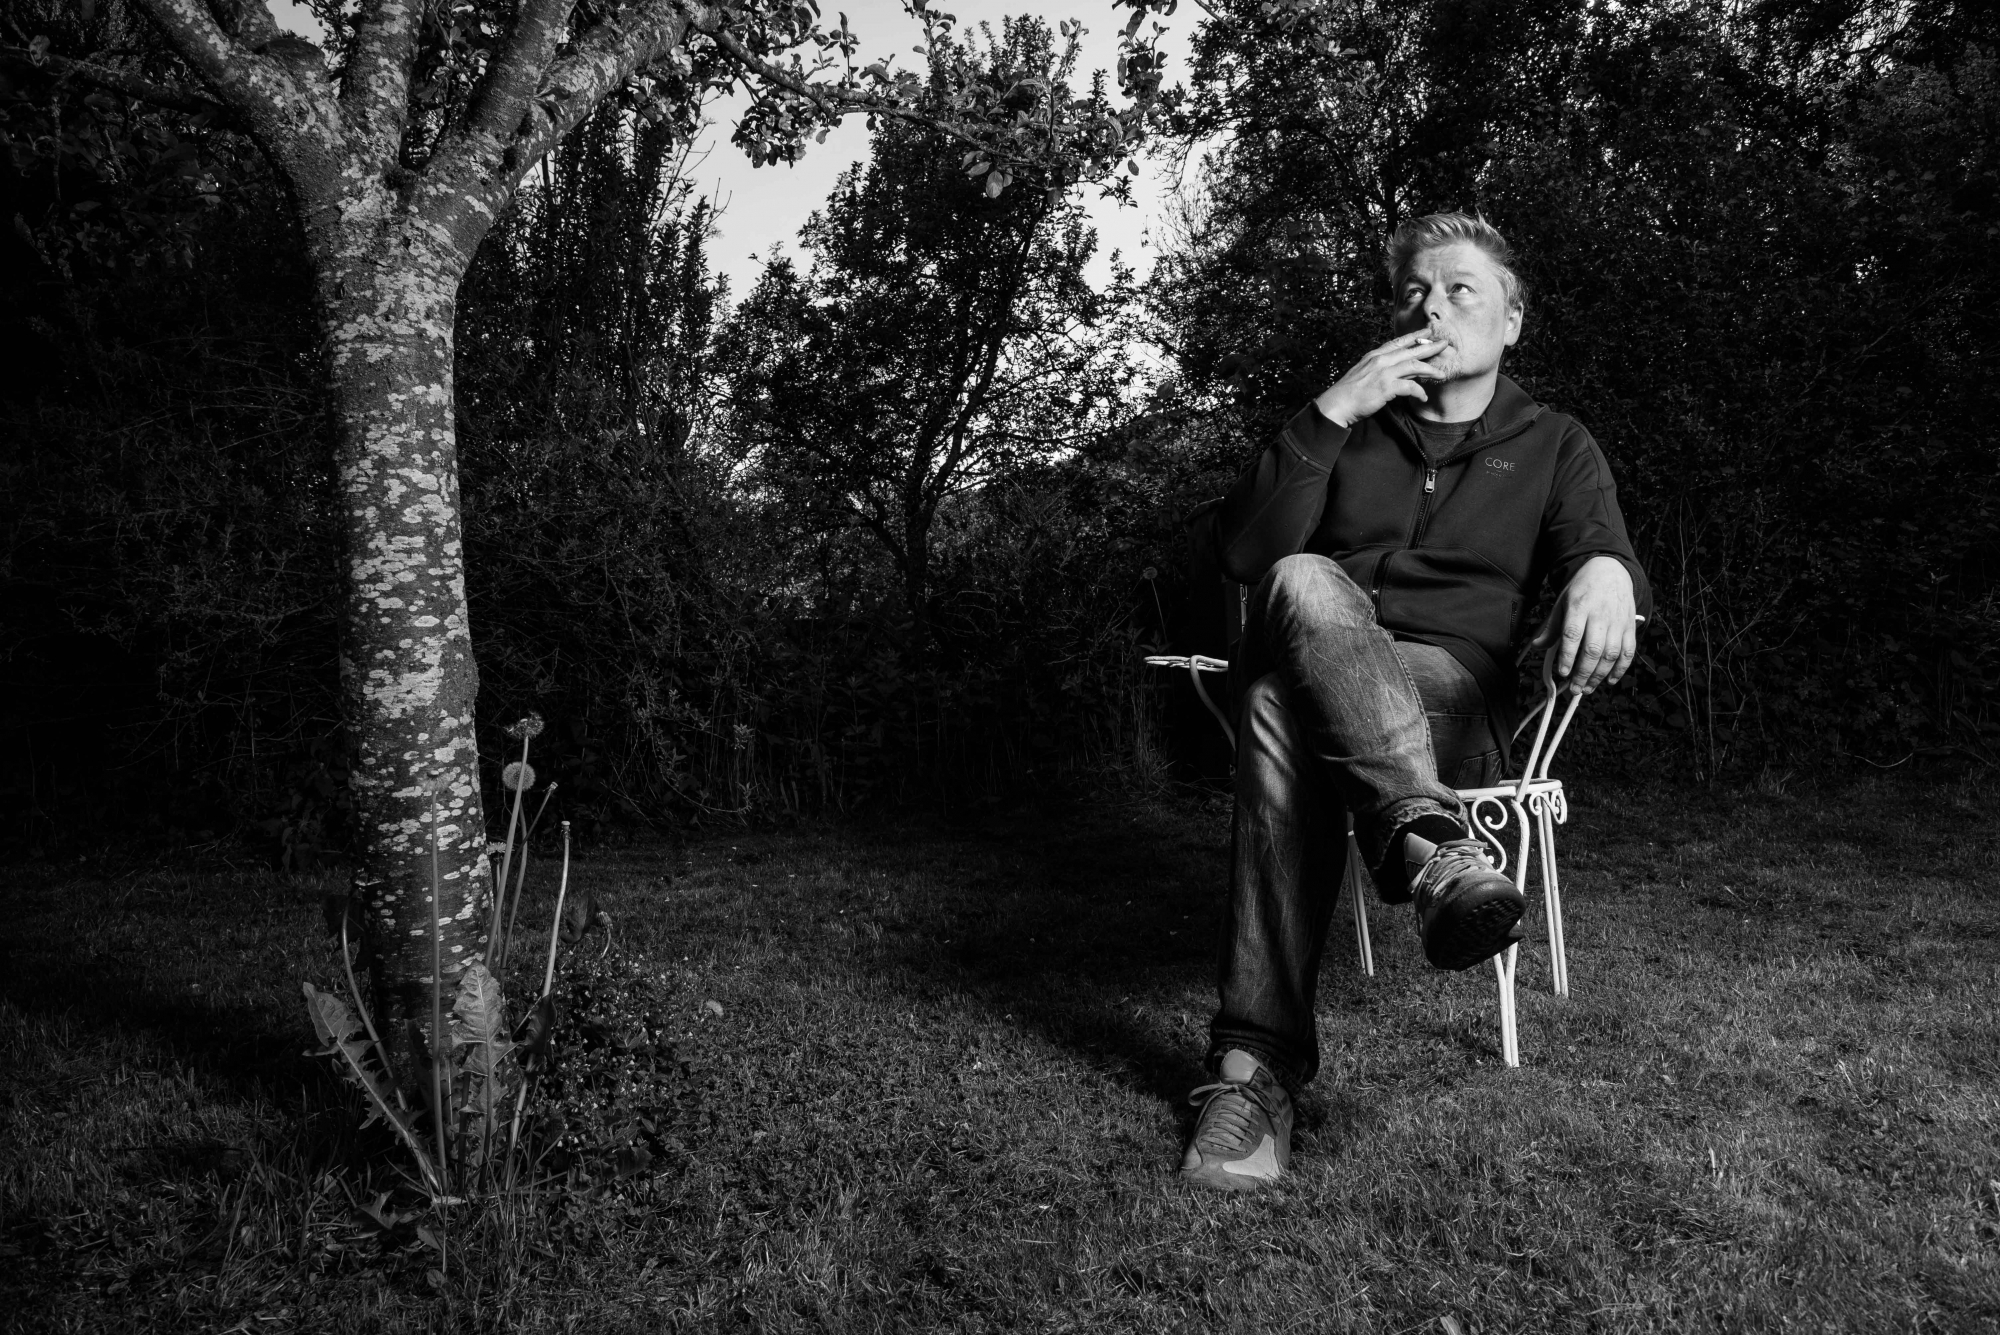 Longirod, mardi 16 mai 2017, portrait de Christophe Calpini, batteur et producteur, dans son jardin, lauréat du prix suisse de la musique, photos Cédric Sandoz